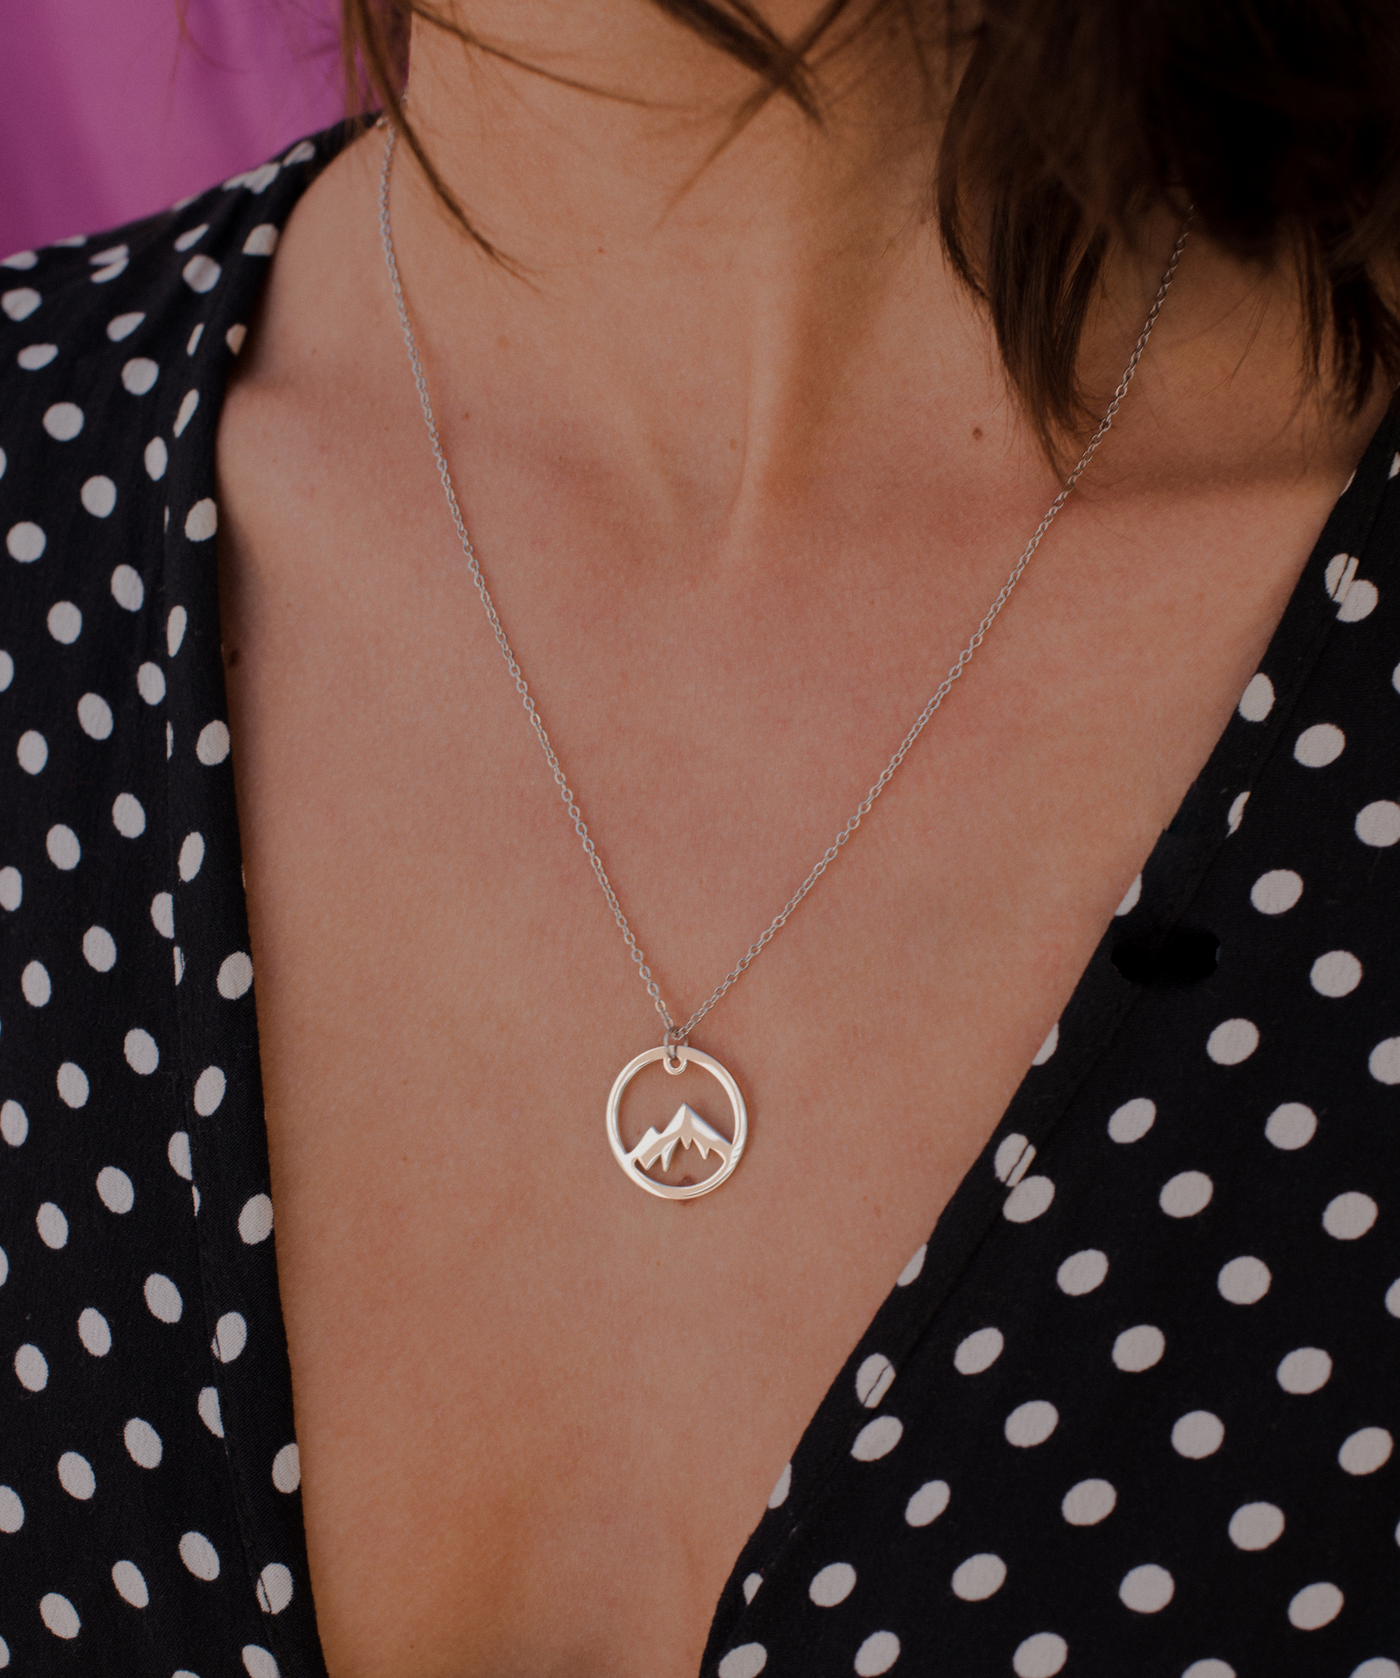  Frau trägt minimalistische Halskette mit Bergipfle Anhänger aus Edelstahl